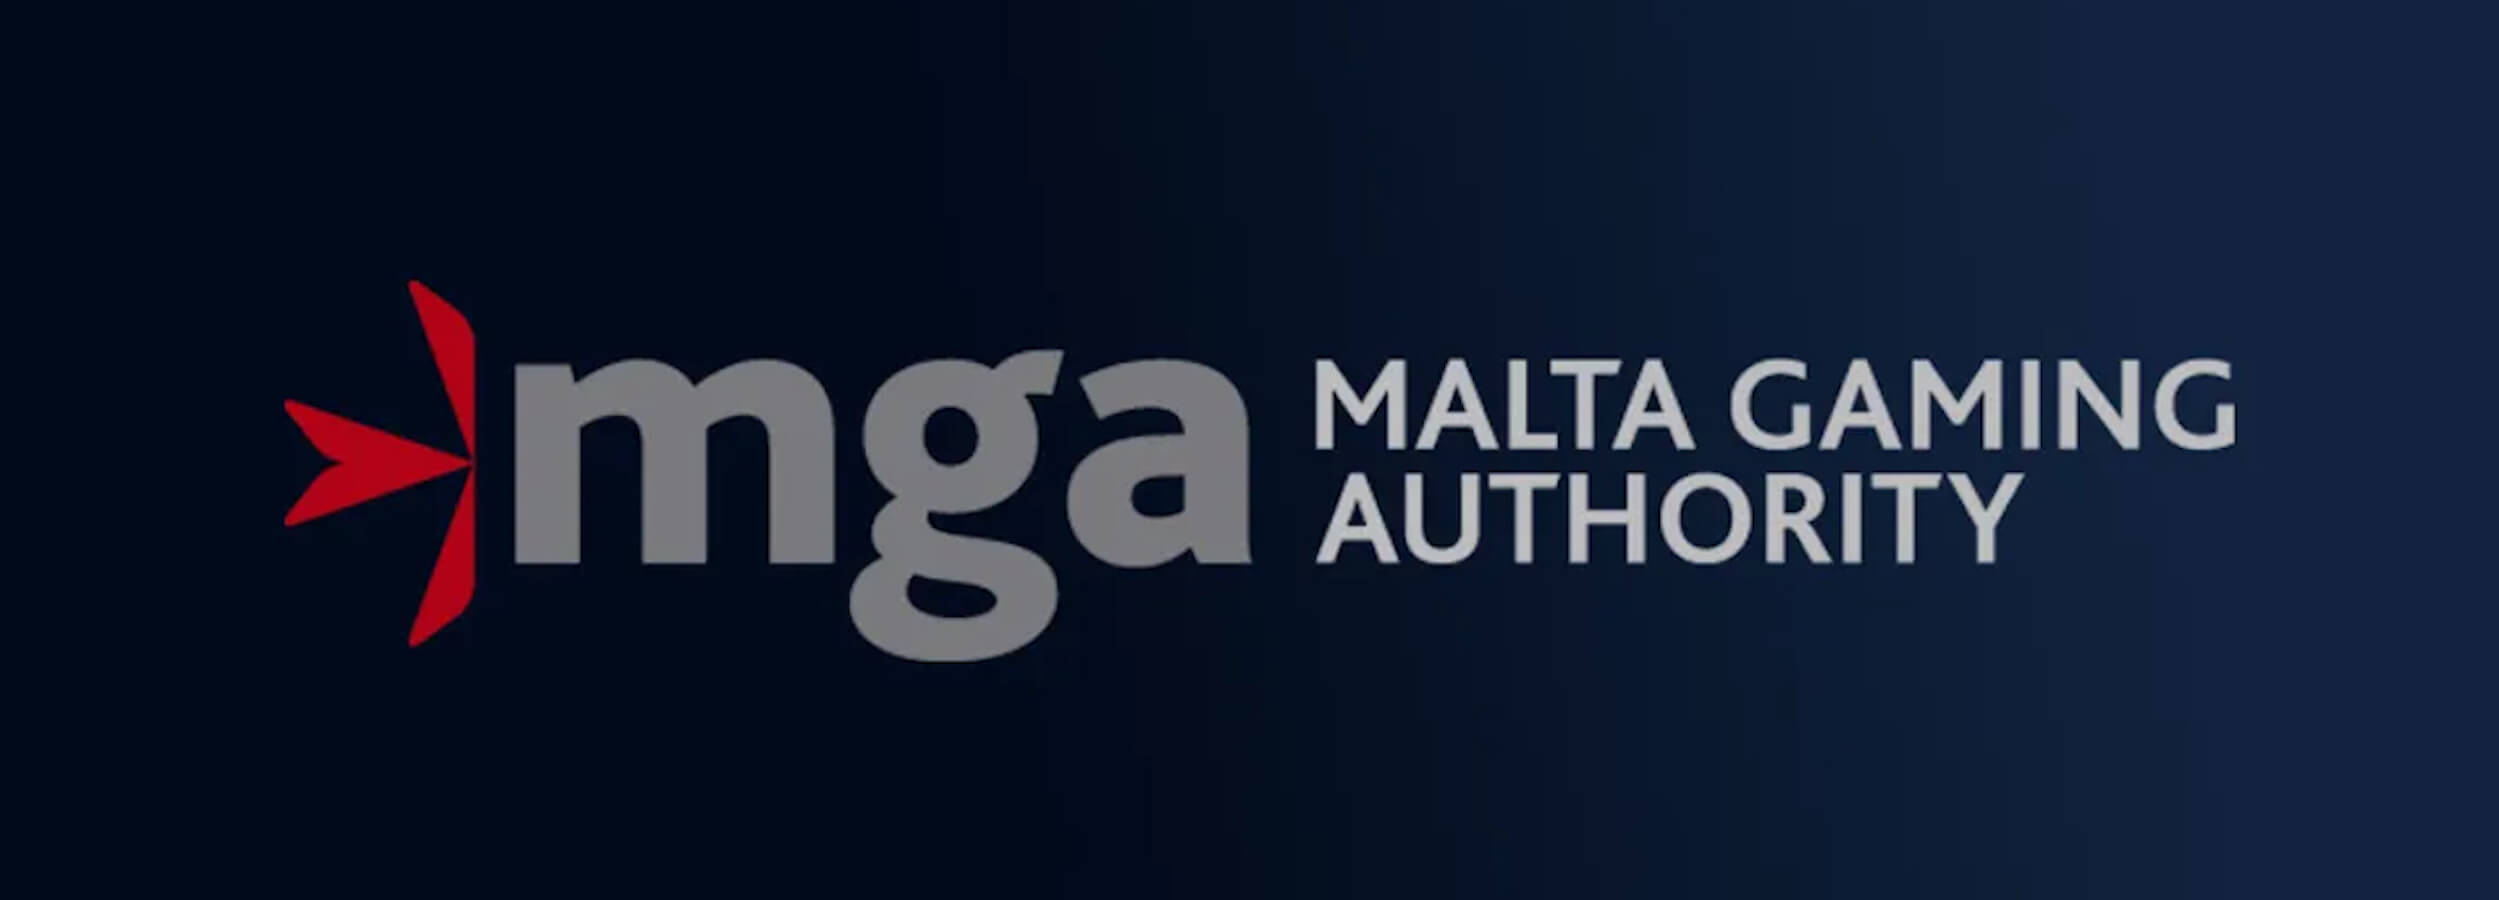 Raport MGA: dobre perspektywy branży hazardowej na Malcie